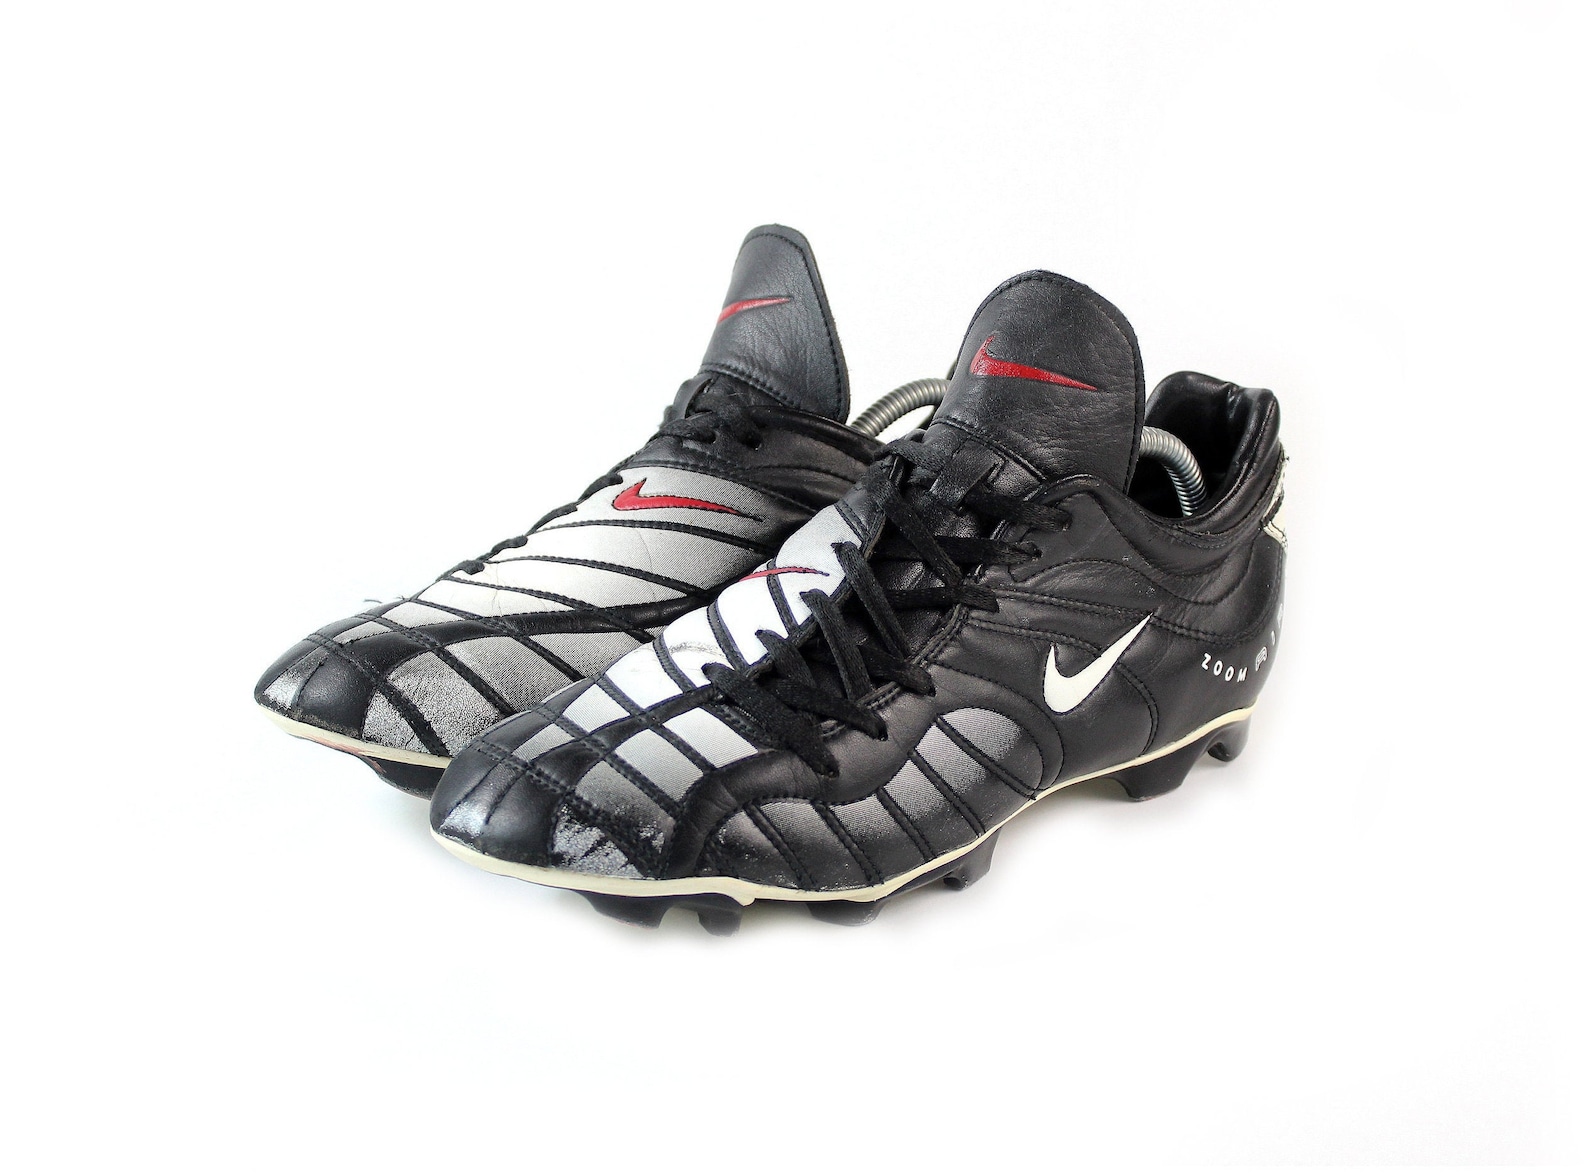 1999 Nike Air Zoom Total 90 FG vintage soccer boots / 90s OG | Etsy